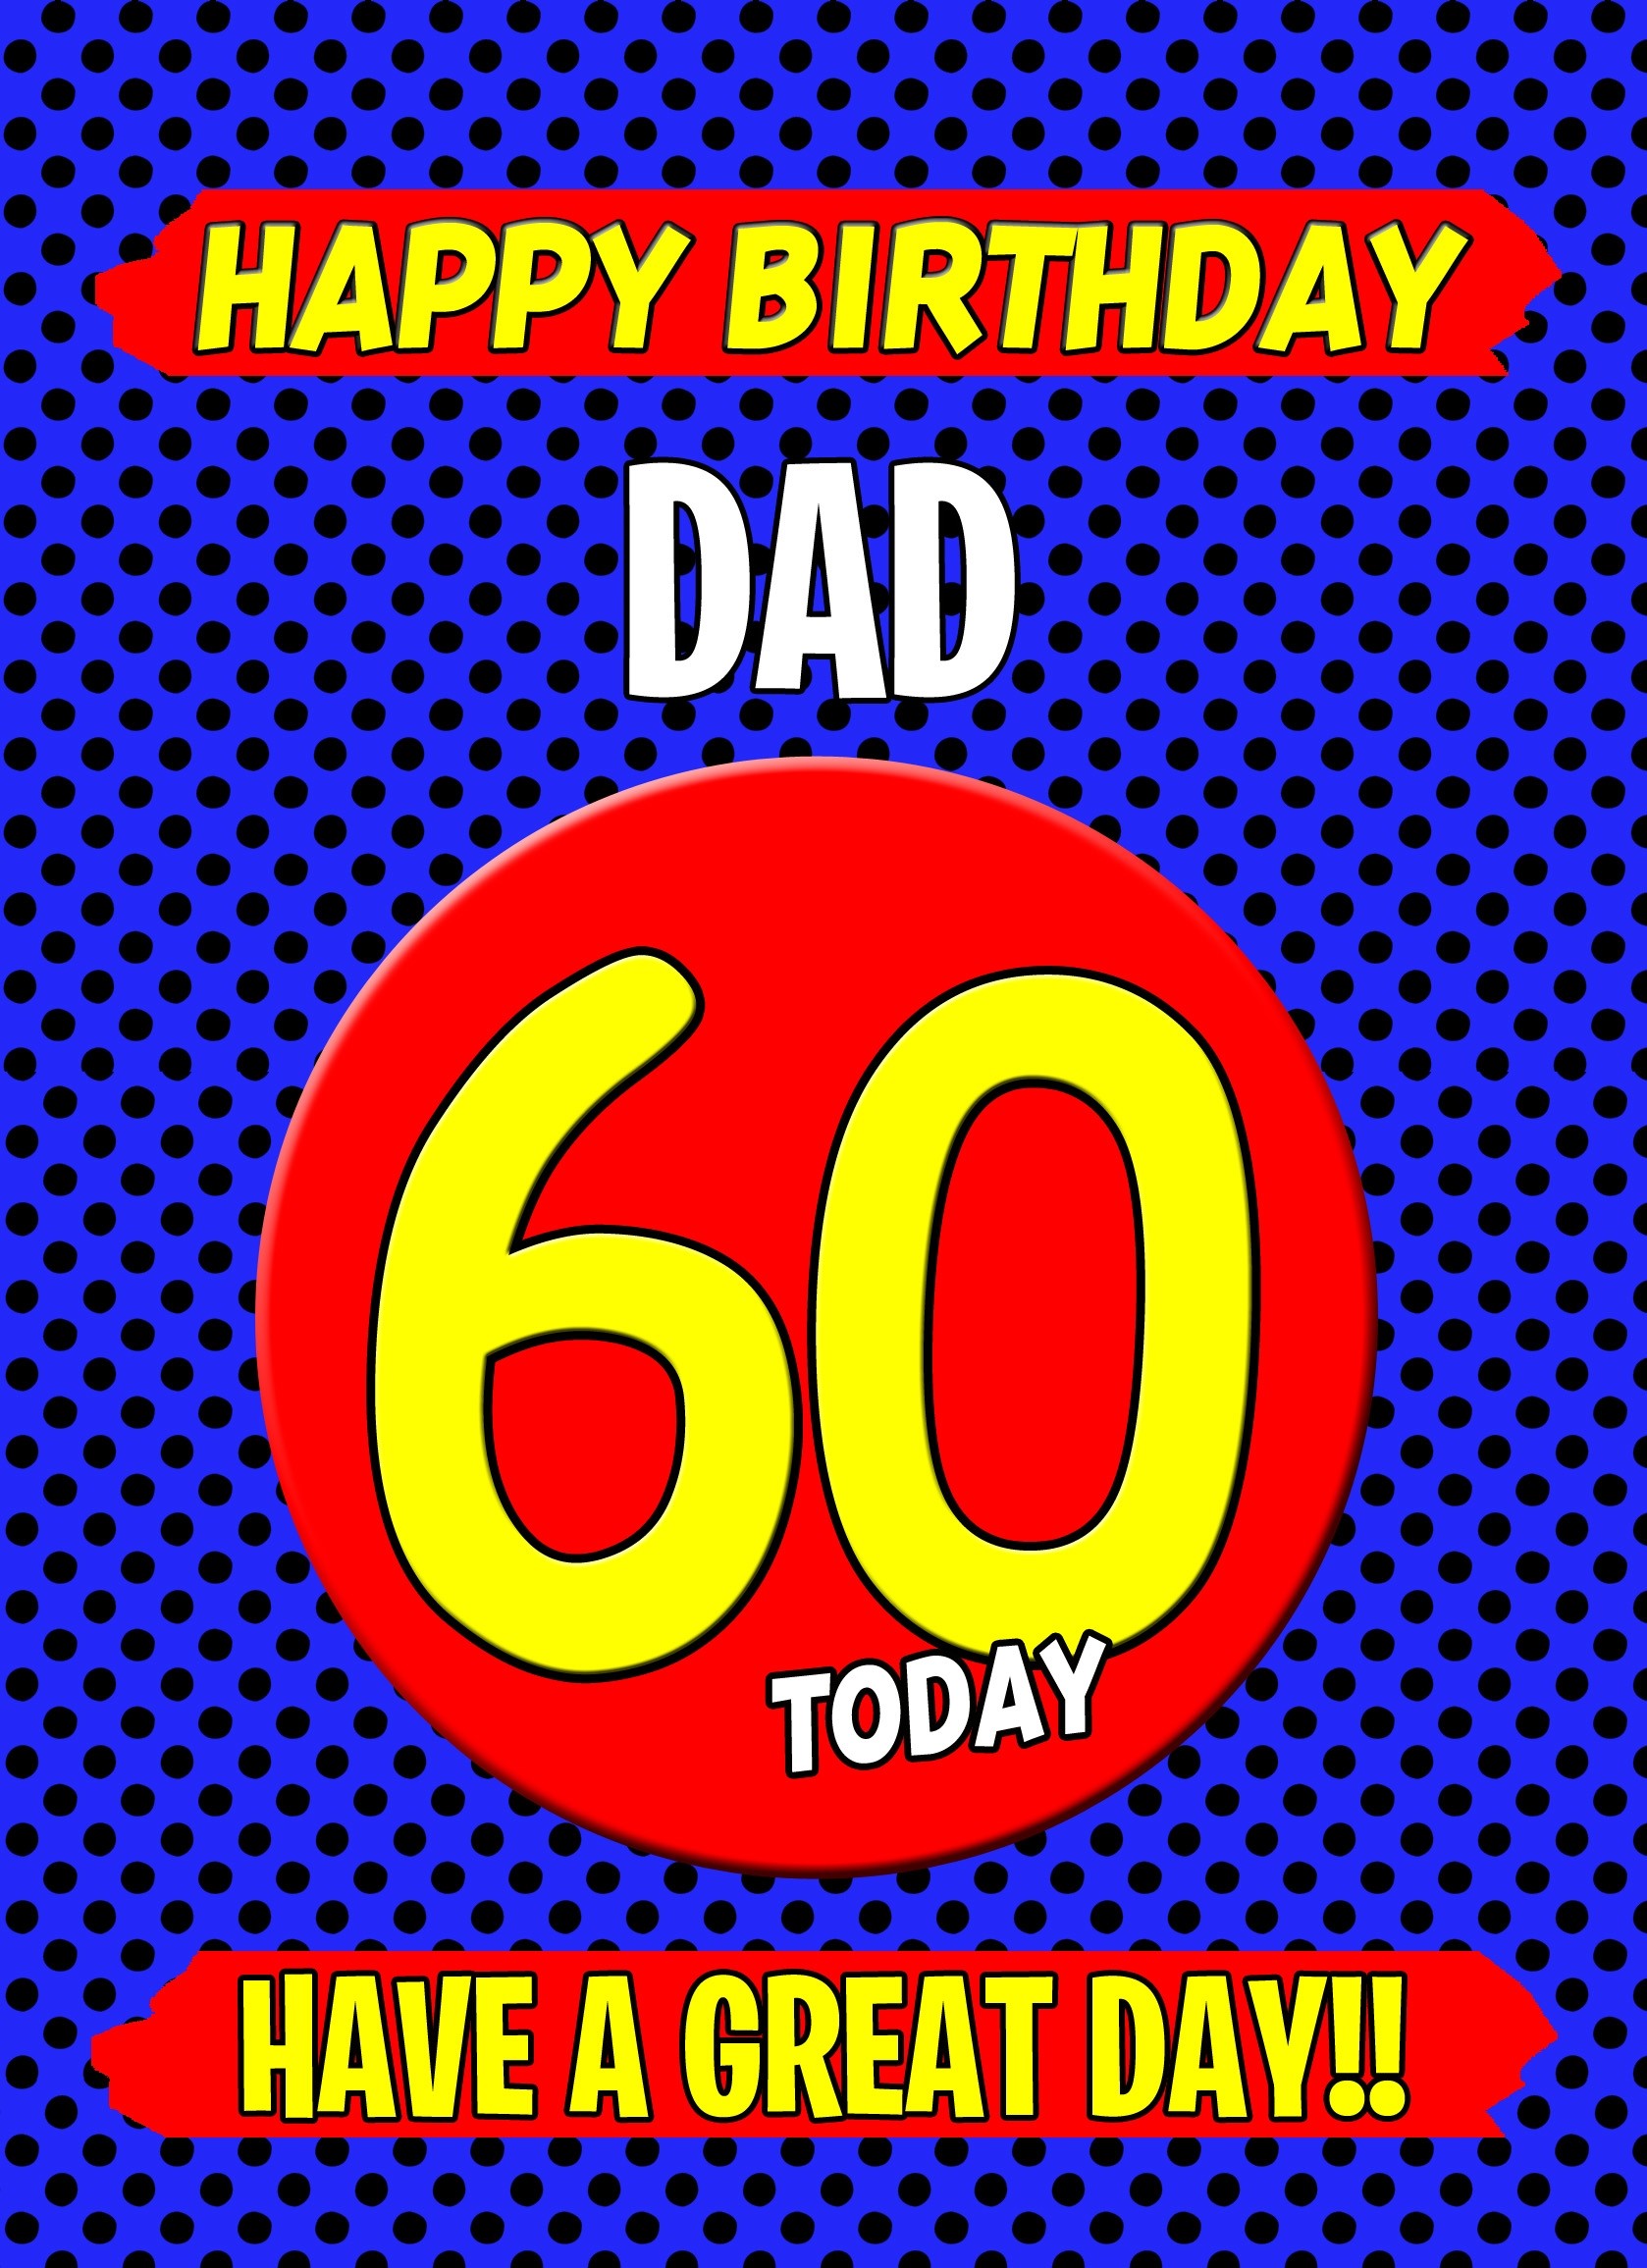 Dad 60th Birthday Card (Blue)